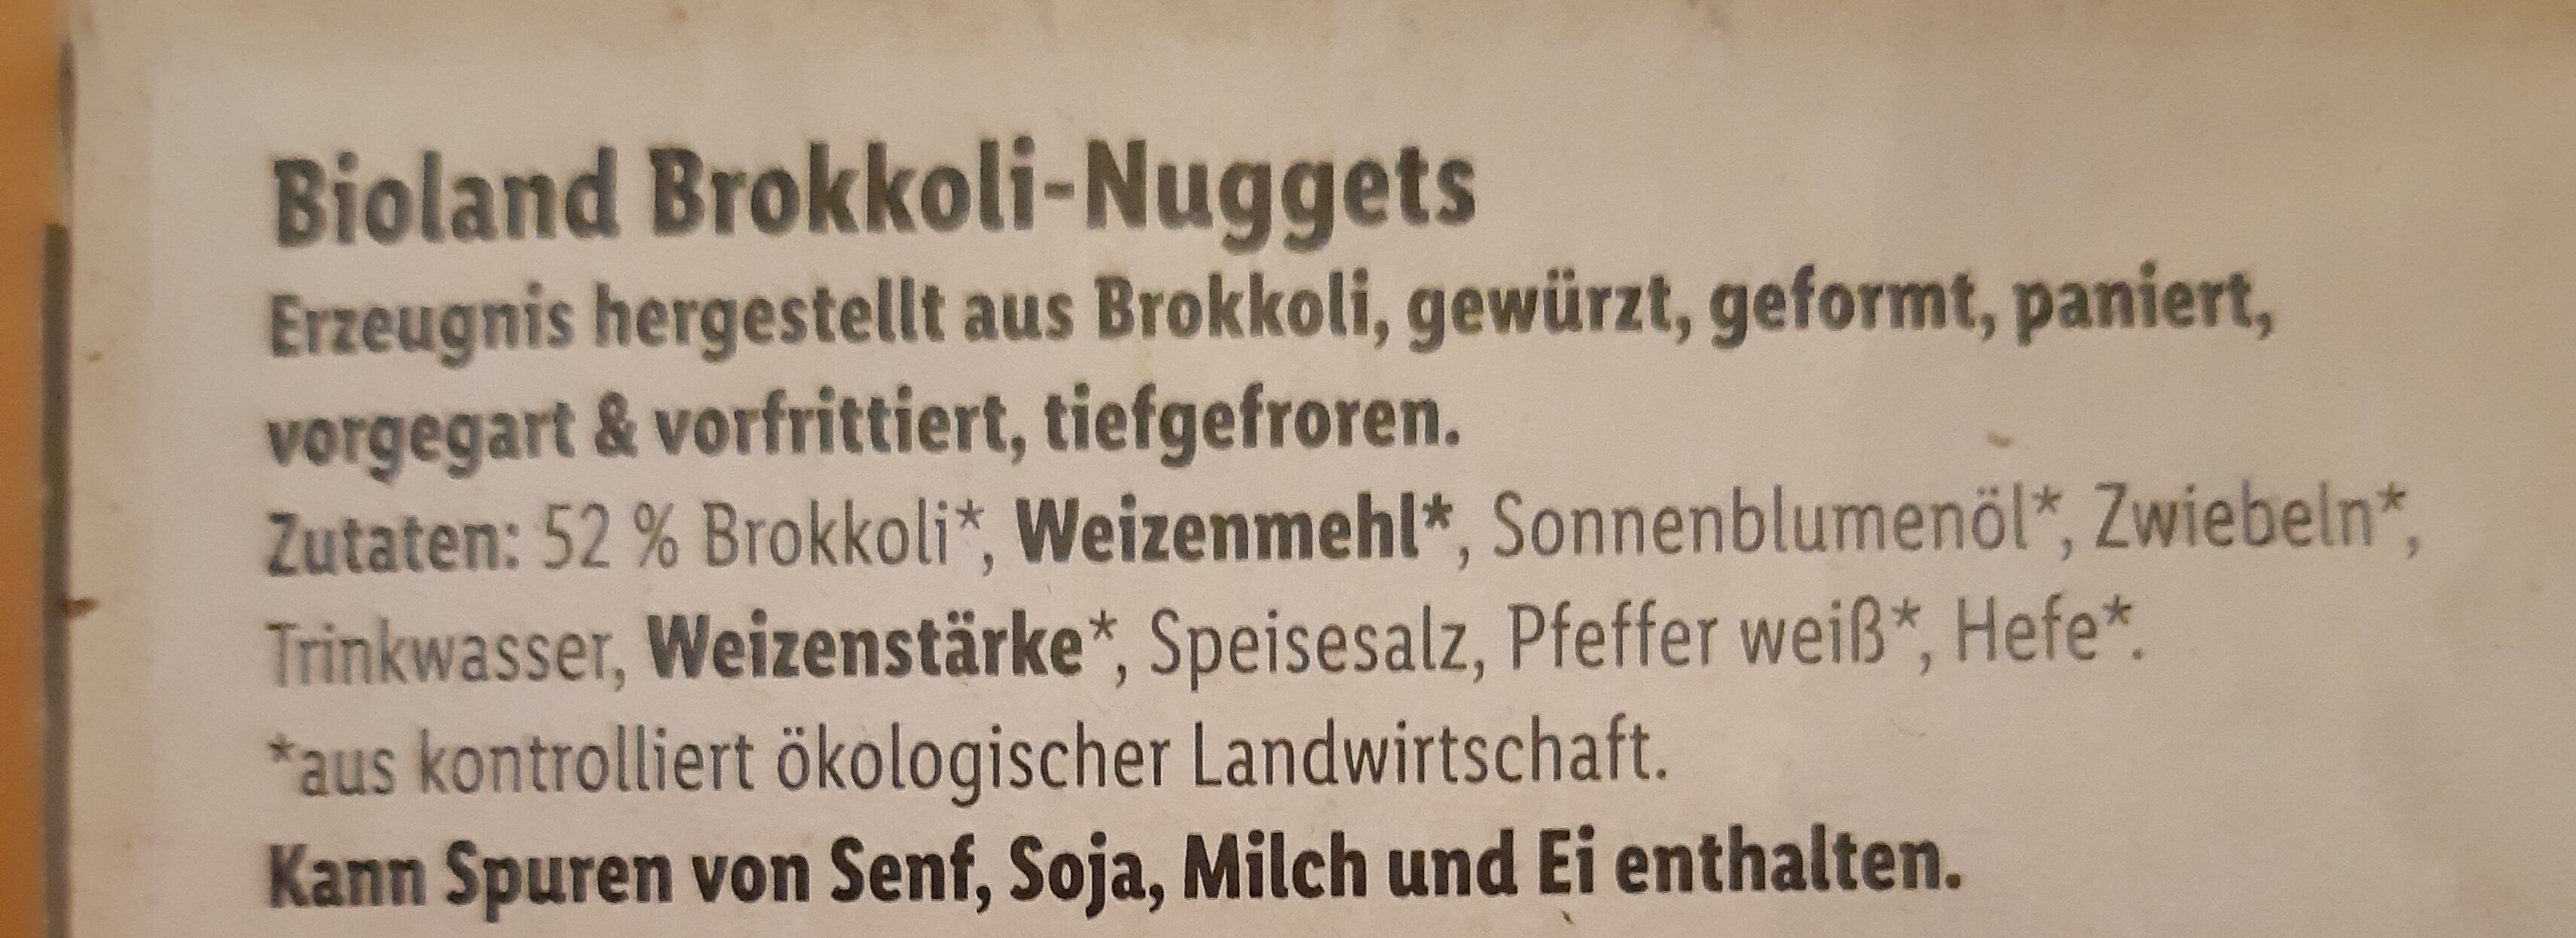 Brokkoli Nuggets - Zutaten